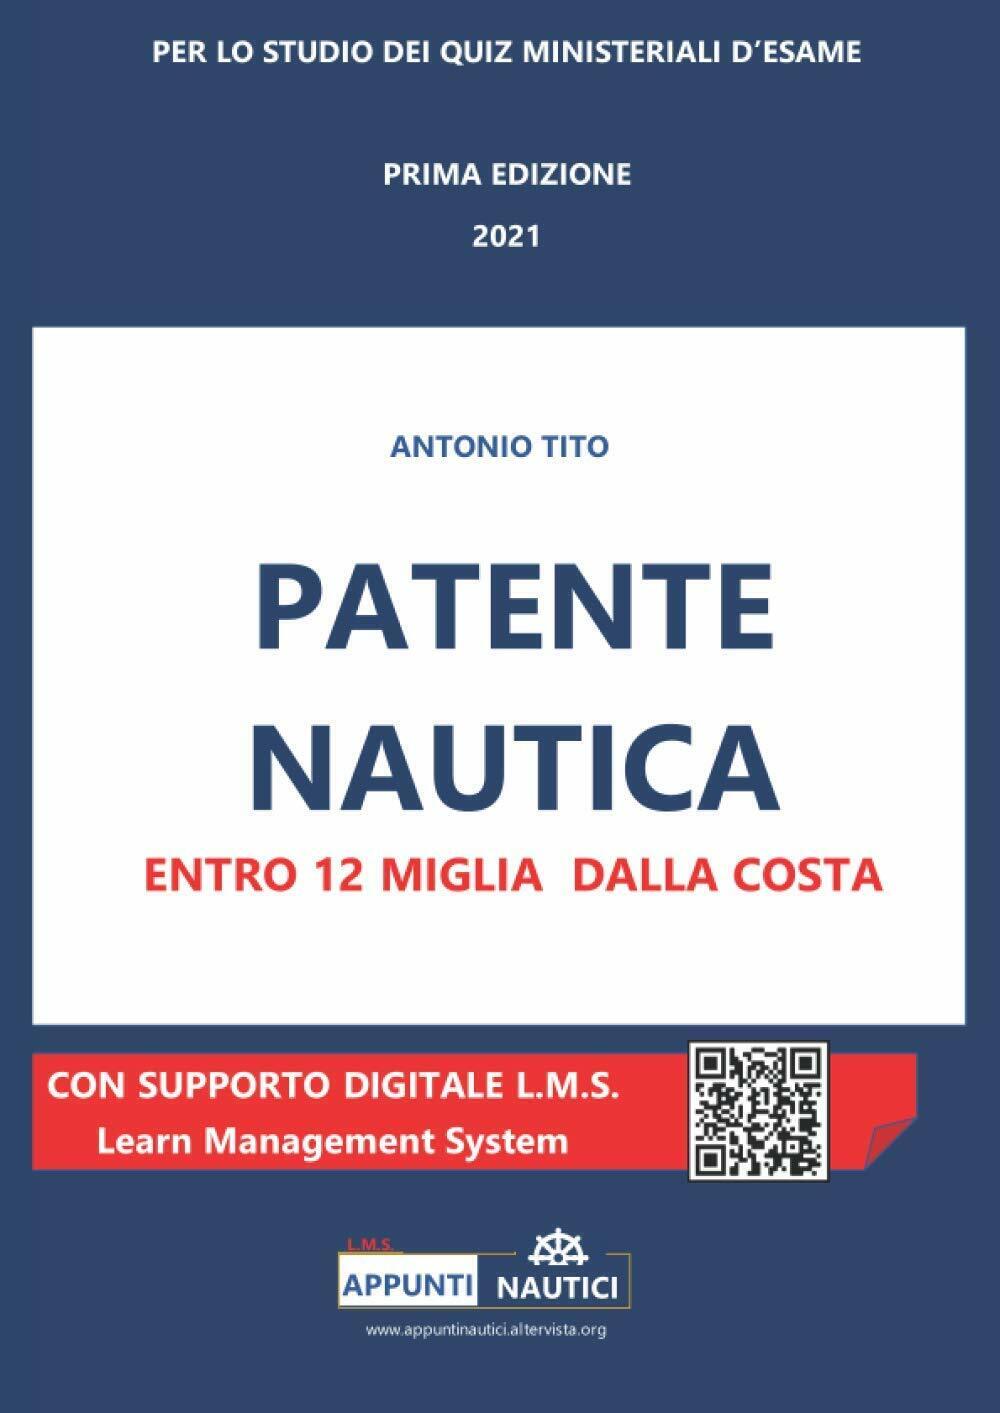 Patente nautica entro 12 miglia dalla costa - Antonio Tito  - 2021